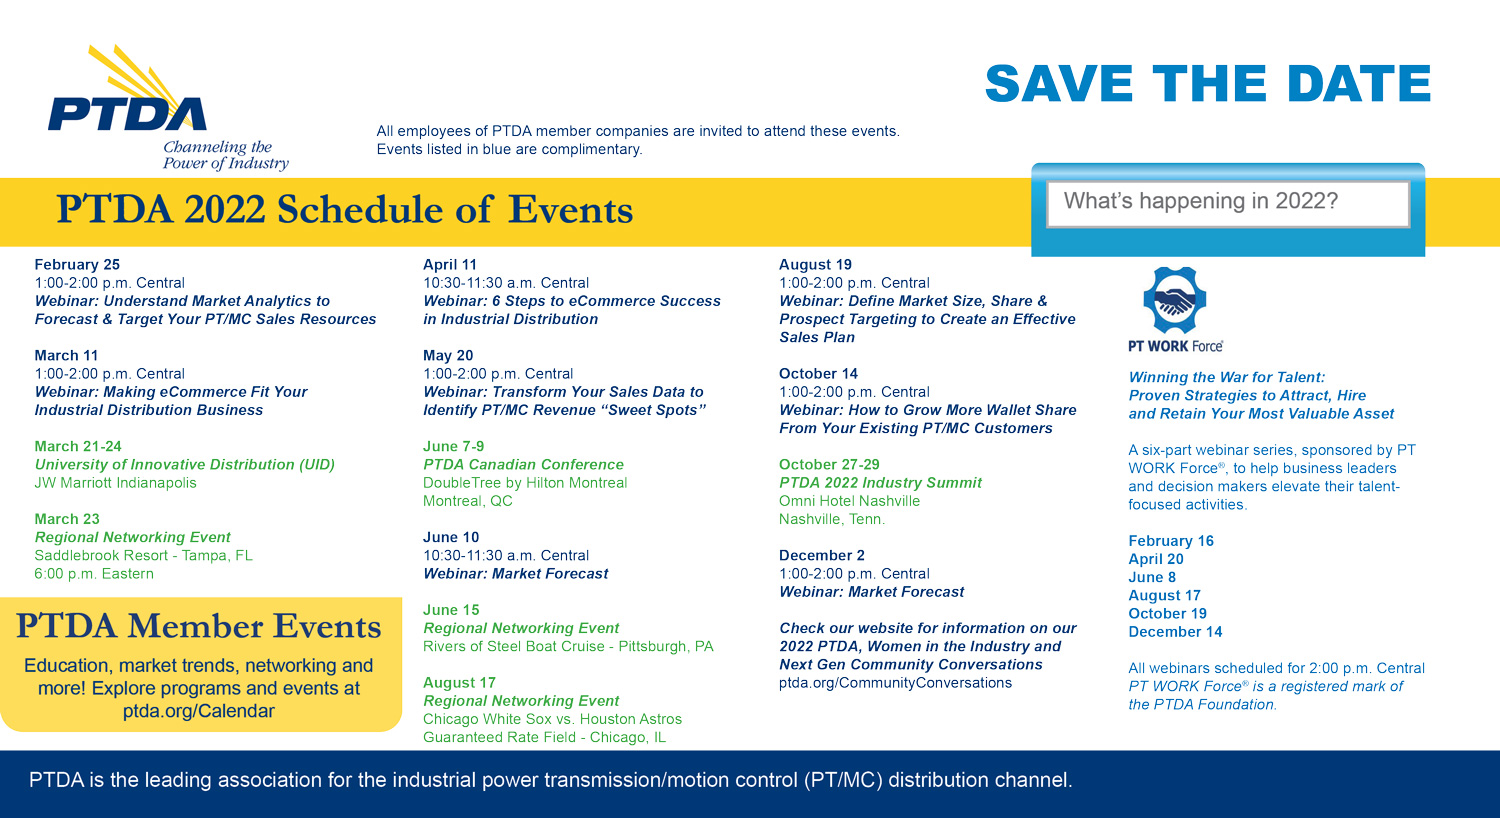 PTDA 2022 Schedule of Events